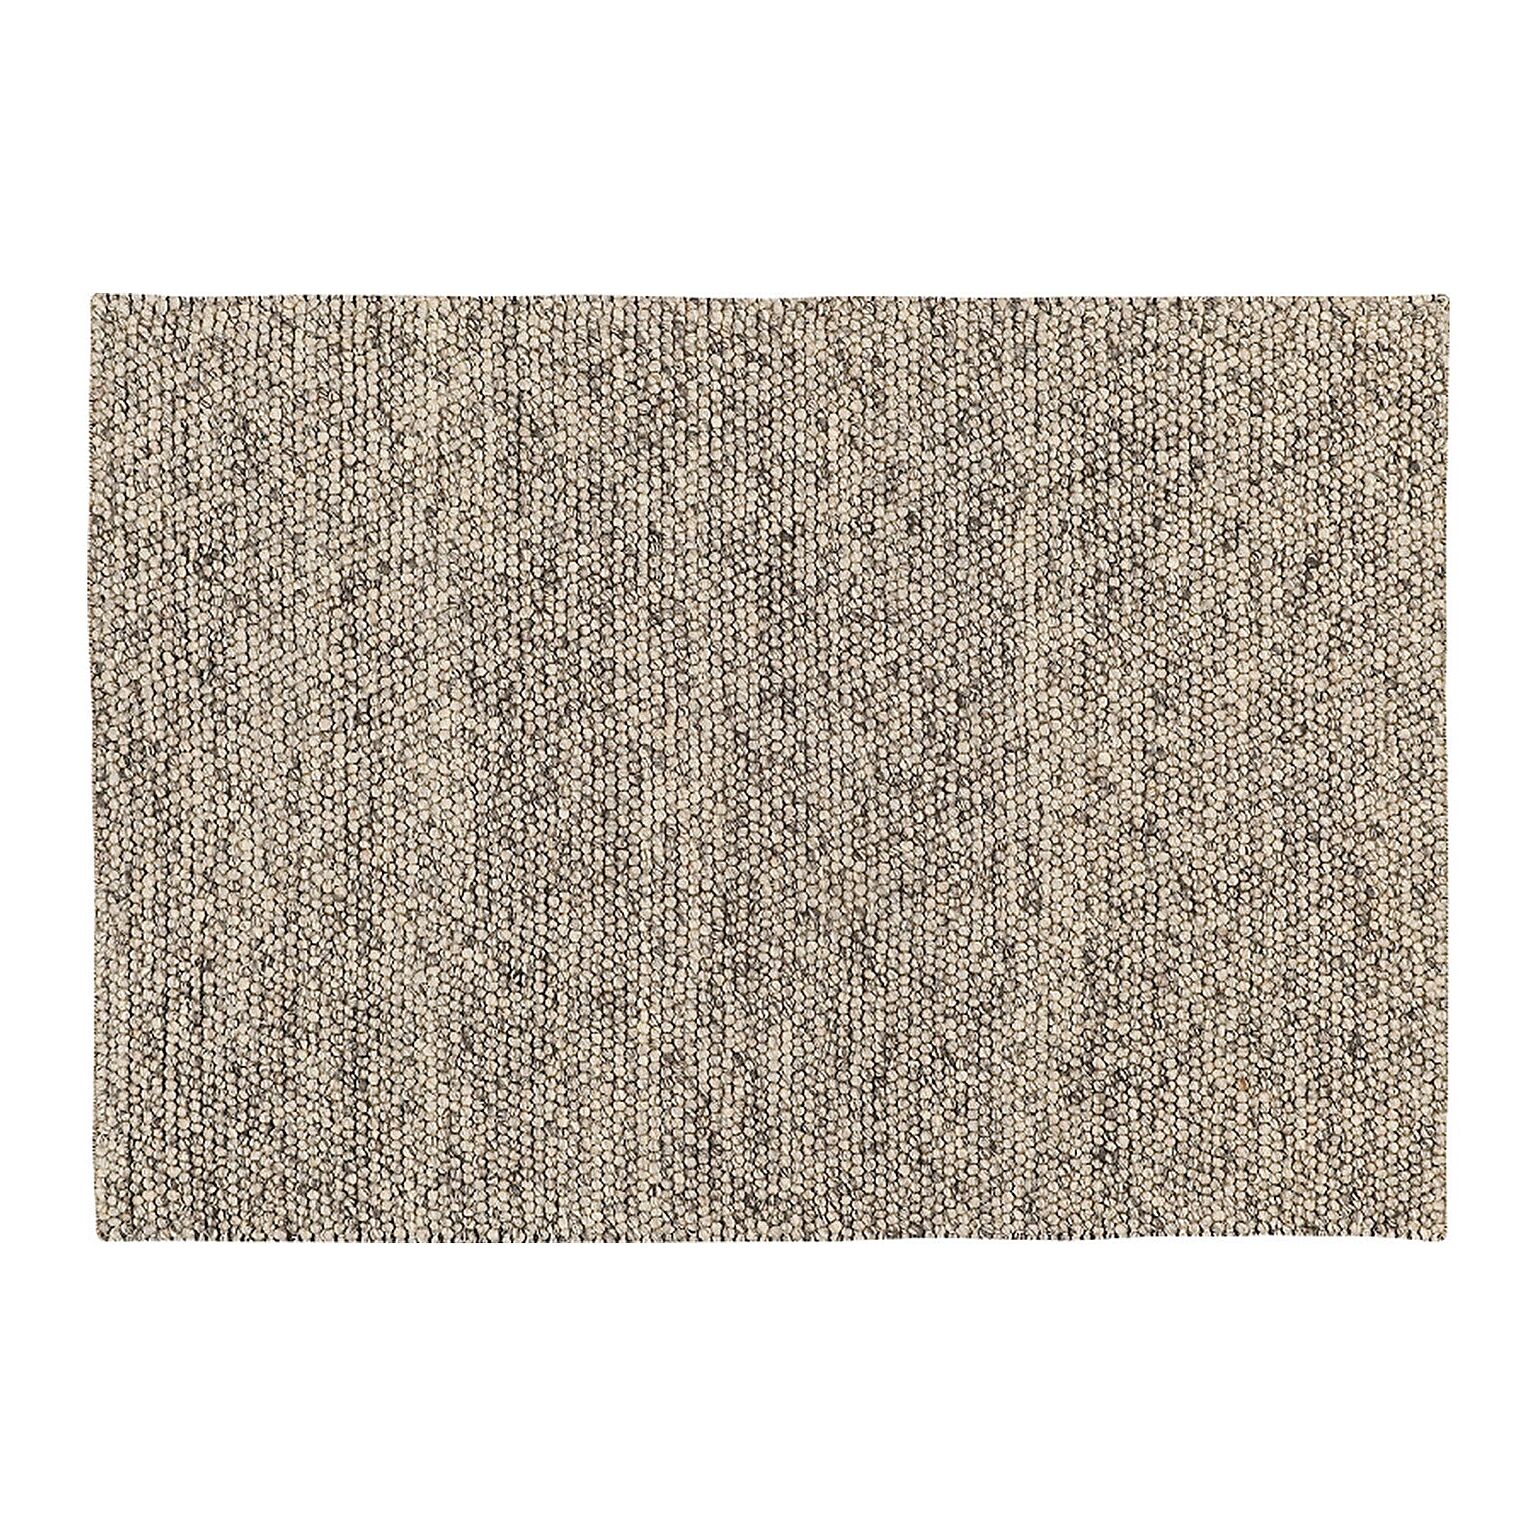 防炎 輸入絨毯 インド製 輸入カーペット wool 毛100% プレーベル prevell マシュー 約190×190cm 床暖房対応 手織り 北欧 モダン 素朴 ナチュラル 引っ越し 新生活